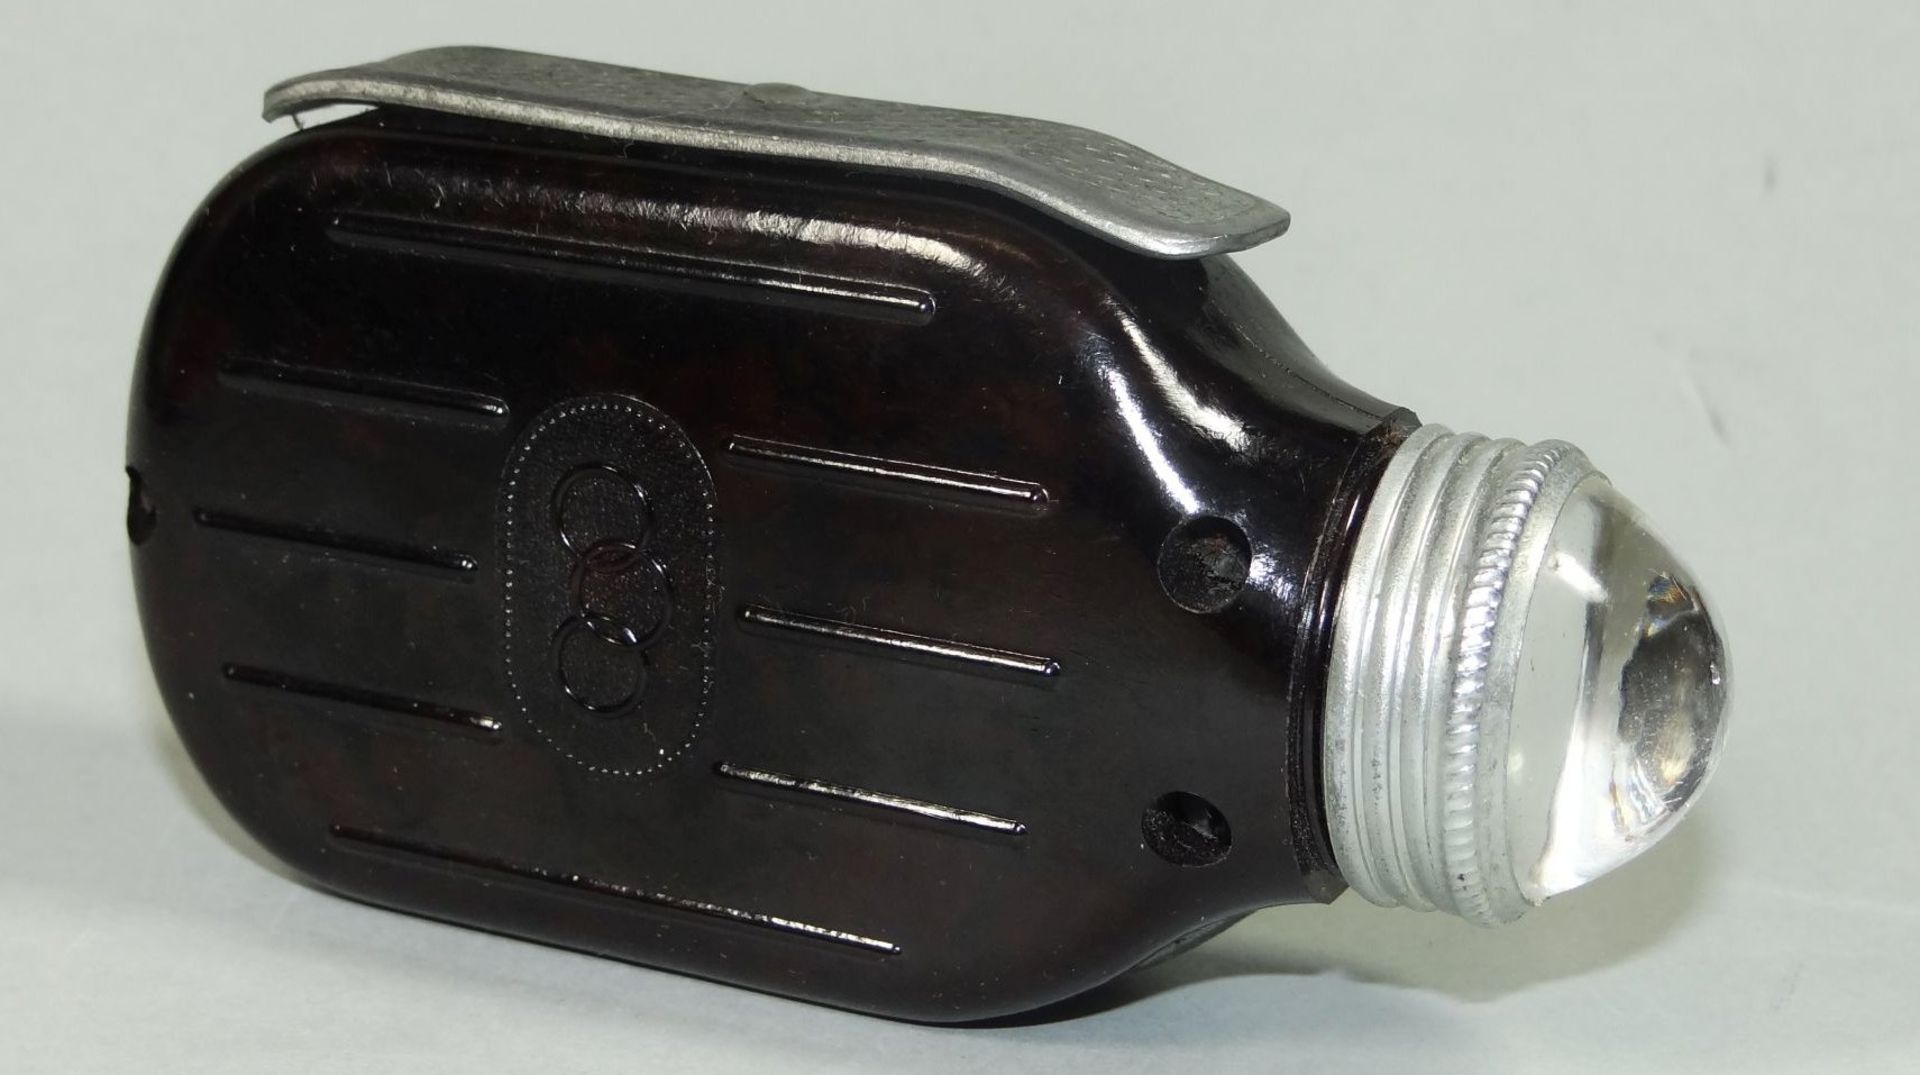 Dynamo-Handtaschenlampe in orig. Karton, Beschreibung, Ersatzbirnen, neuwertig und funktioniert - Bild 3 aus 4